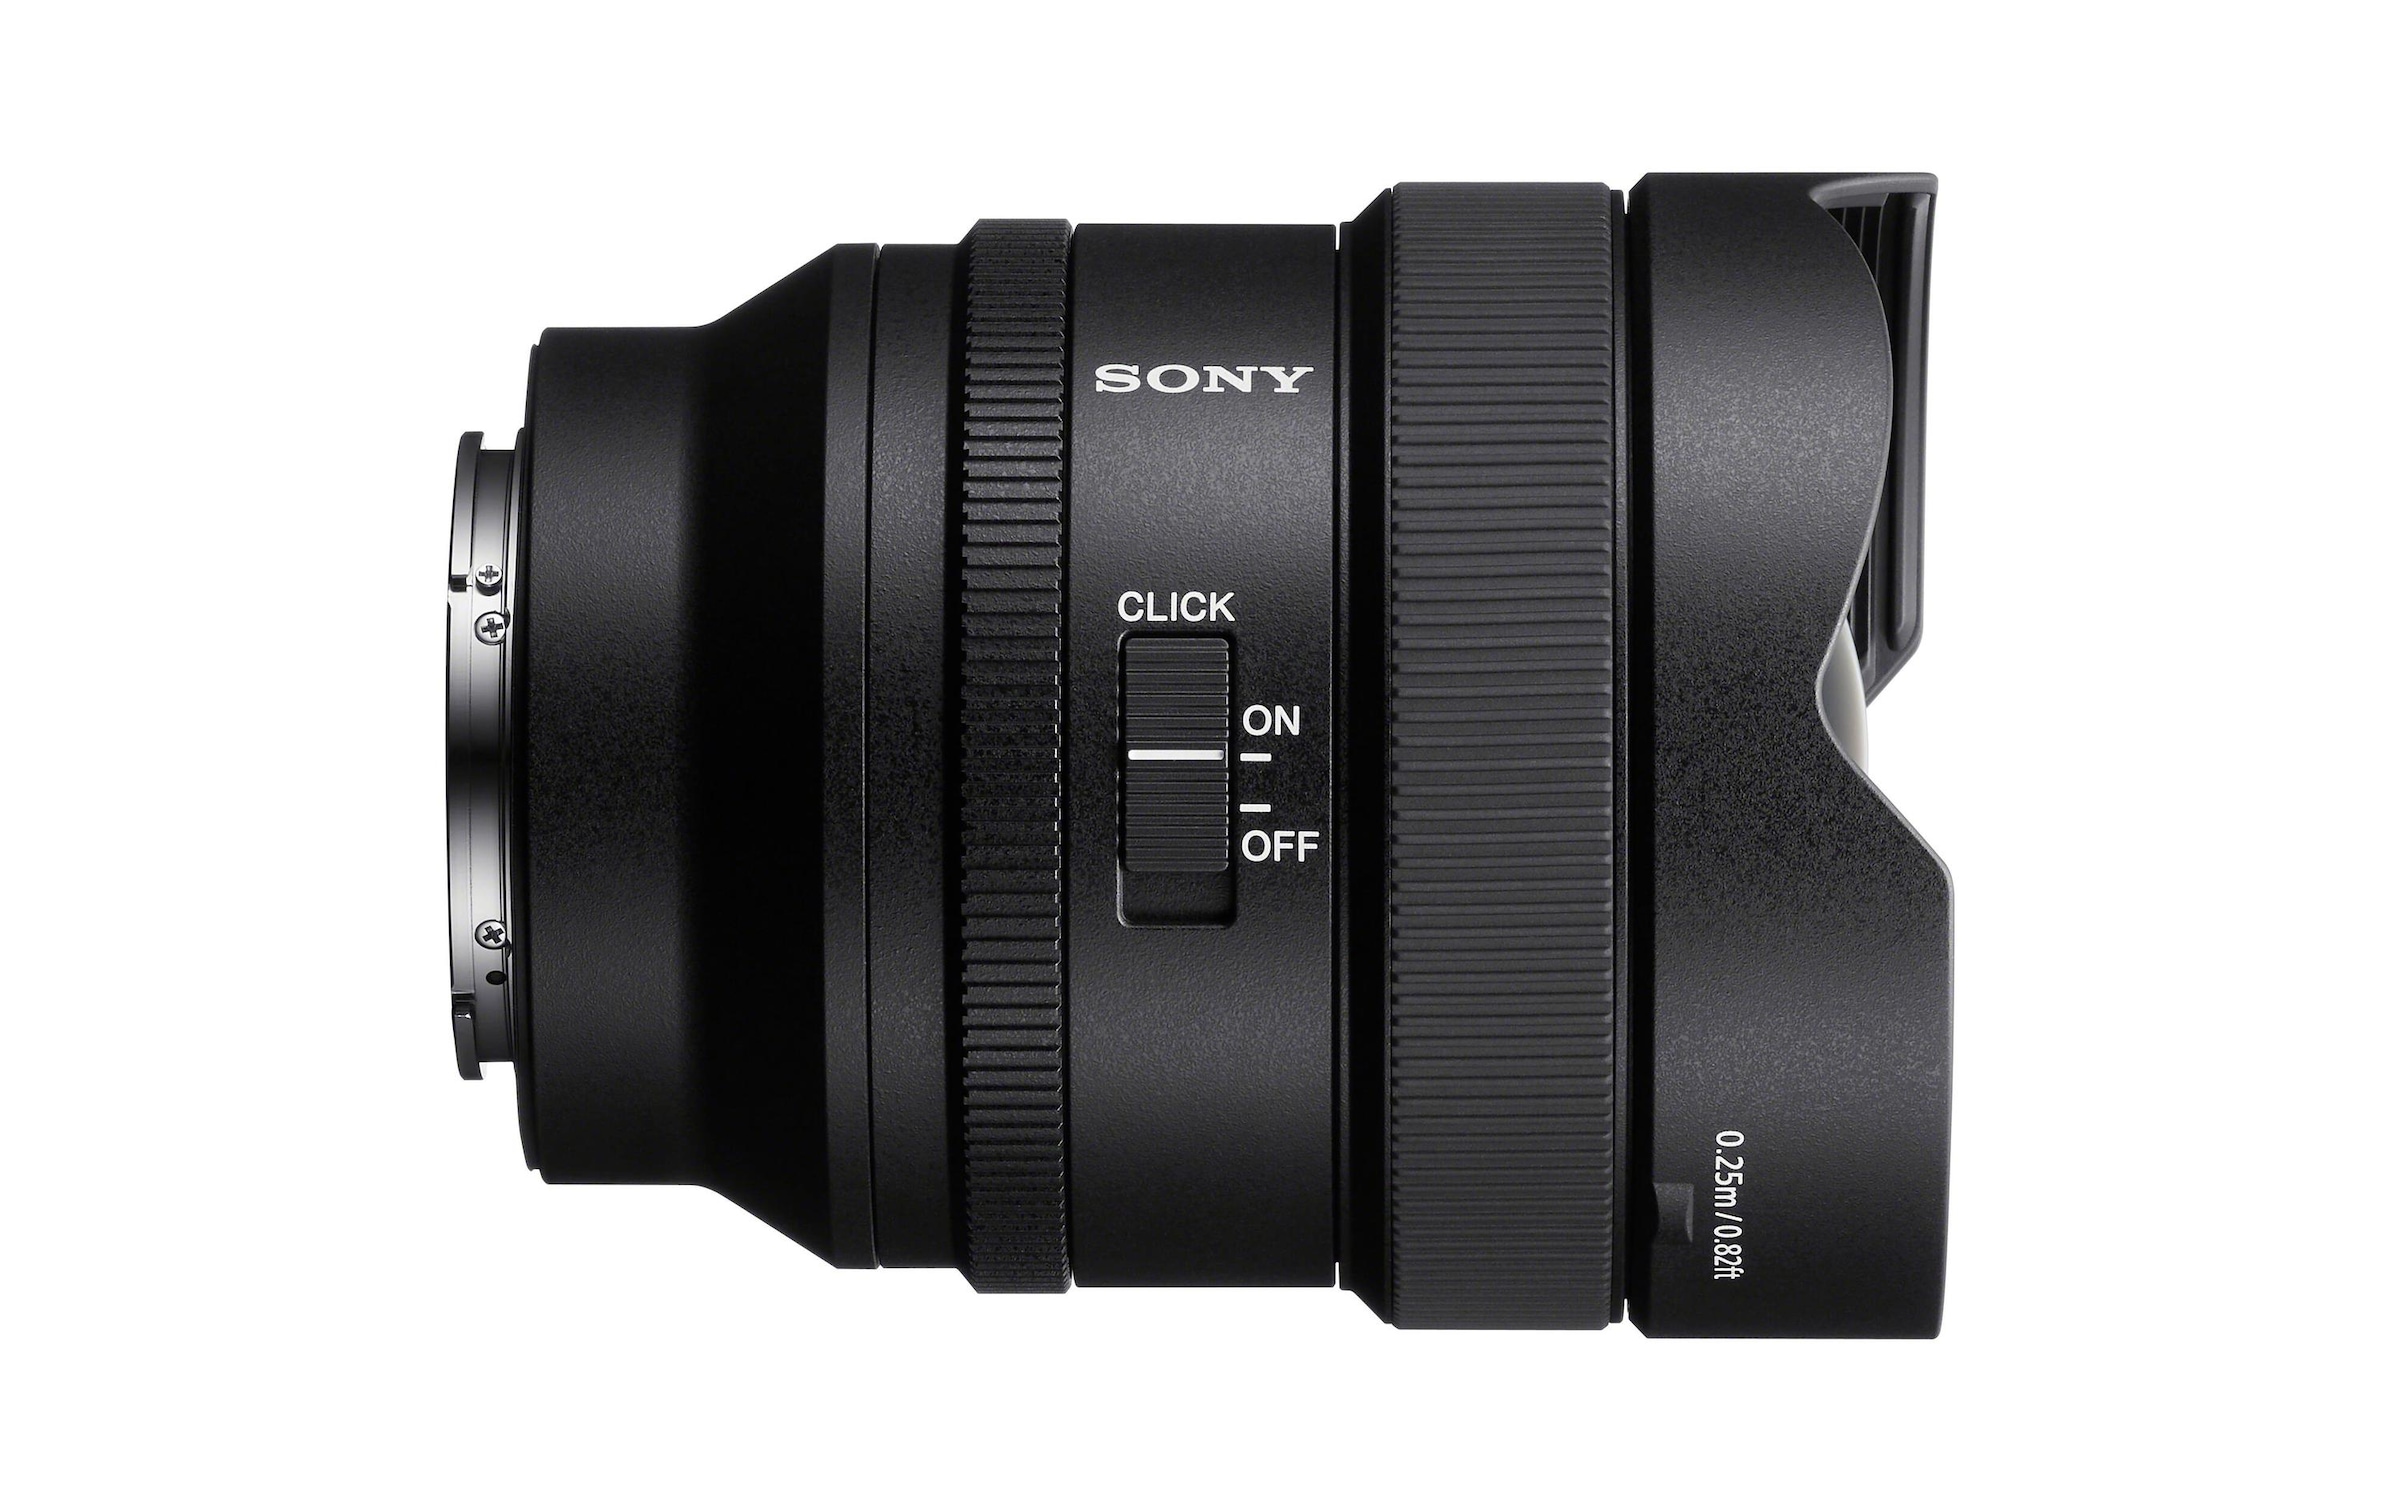 Sony Festbrennweiteobjektiv »FE 14mm F/1.8 G«